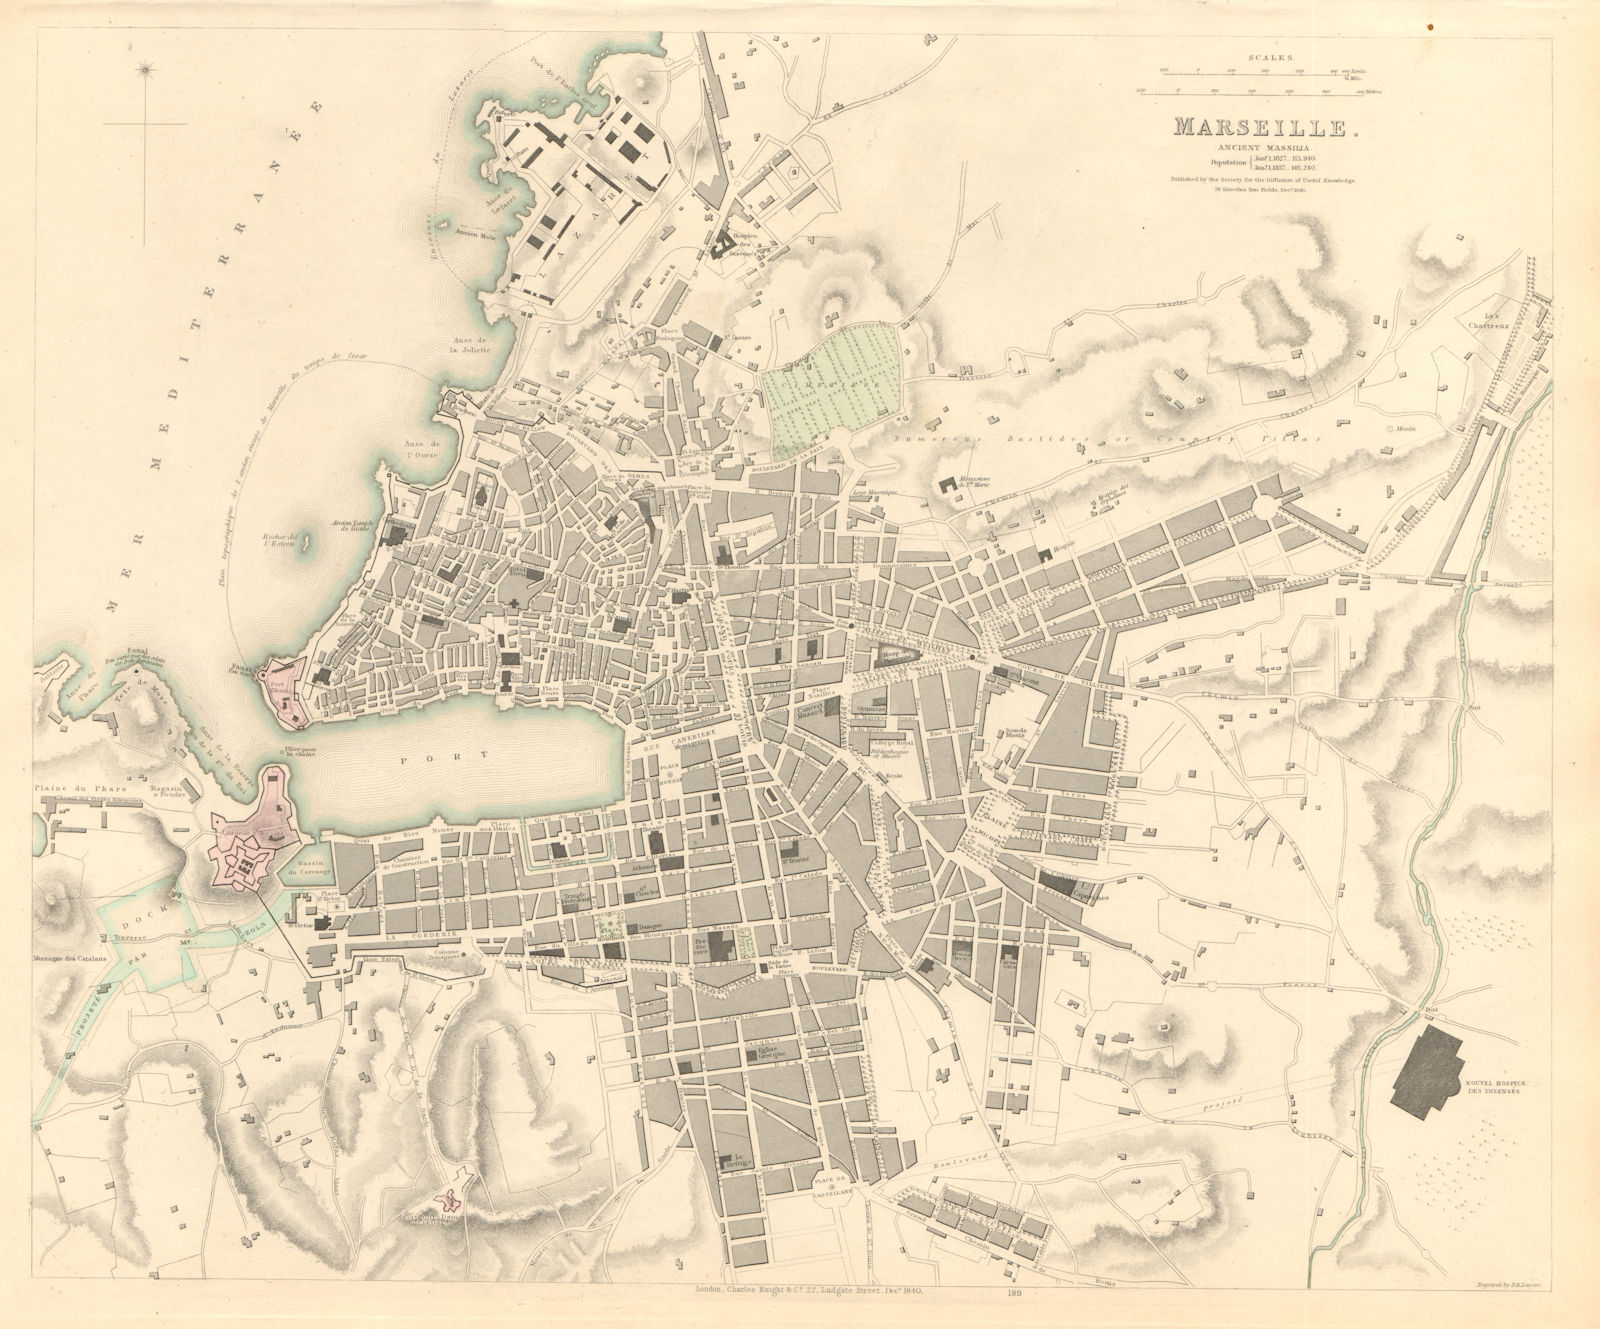 MARSEILLE. Antique town city map. Ancient Massilia. Marseilles. SDUK 1847